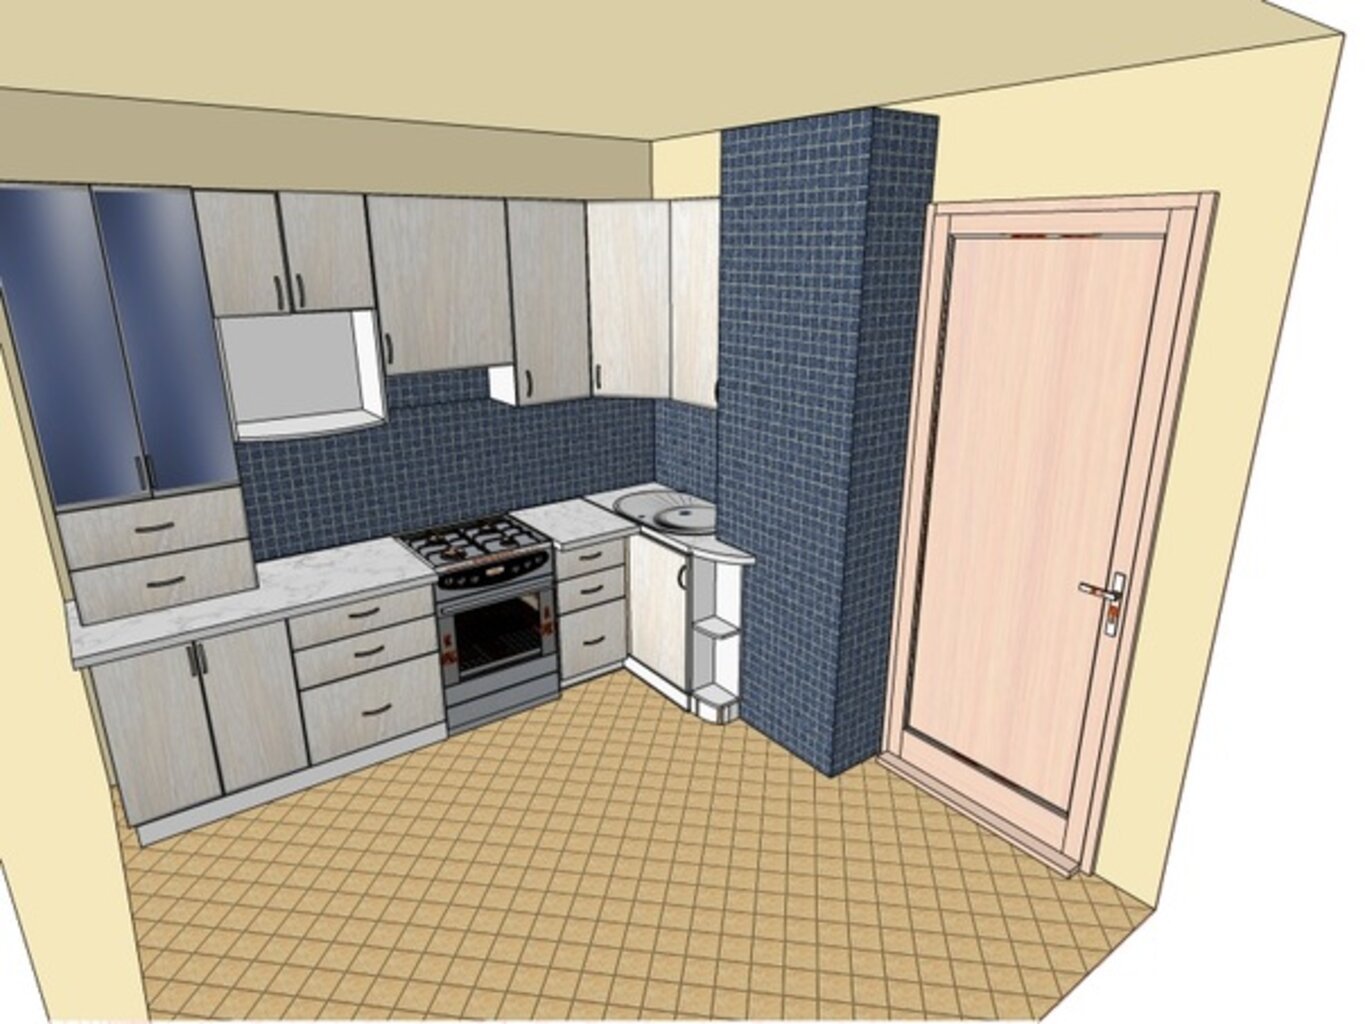 планировка кухни 12 кв м с холодильником